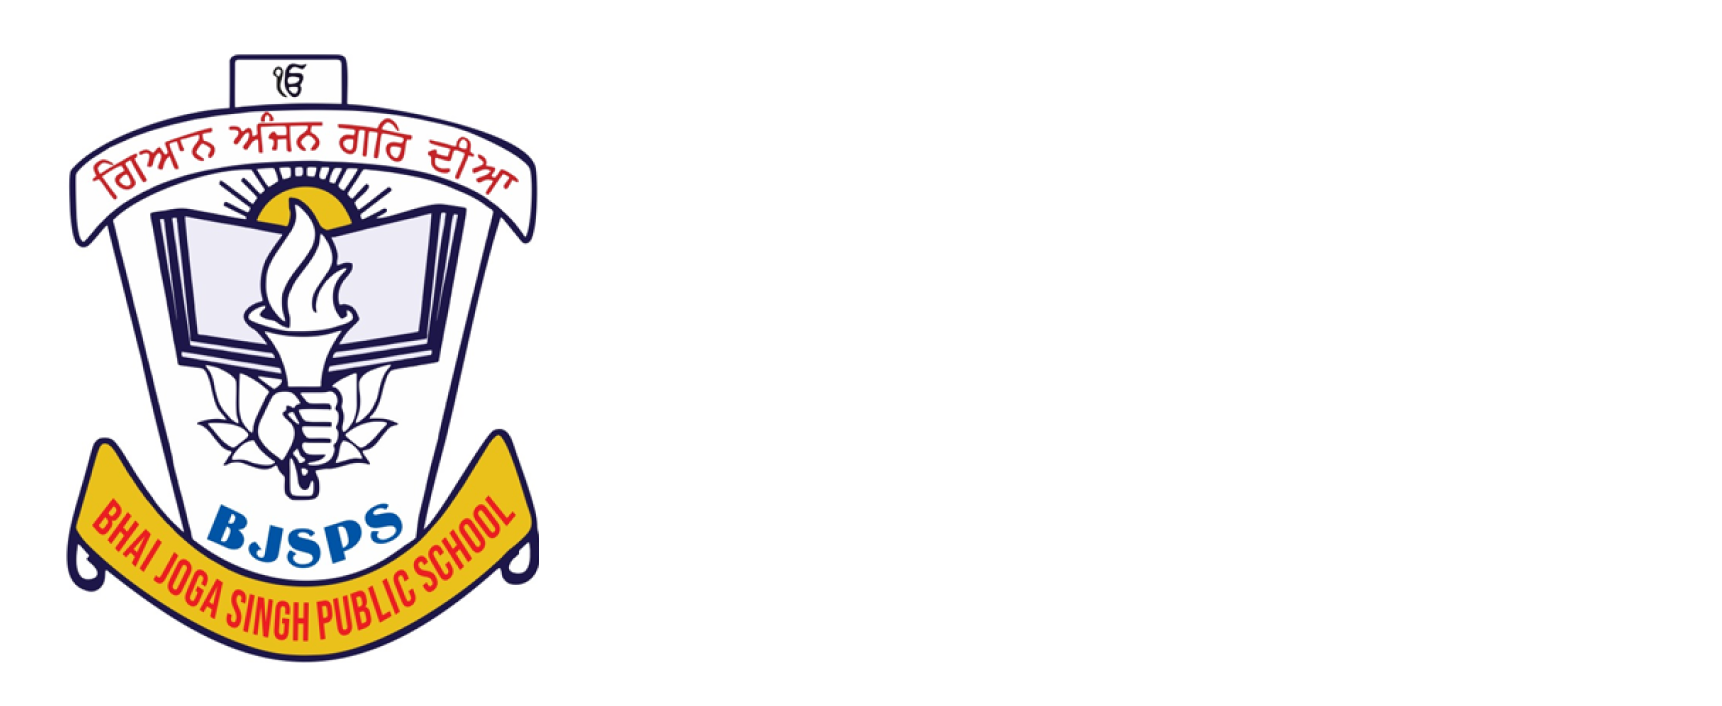 Bhai Joga Singh Public School, Karol Bagh